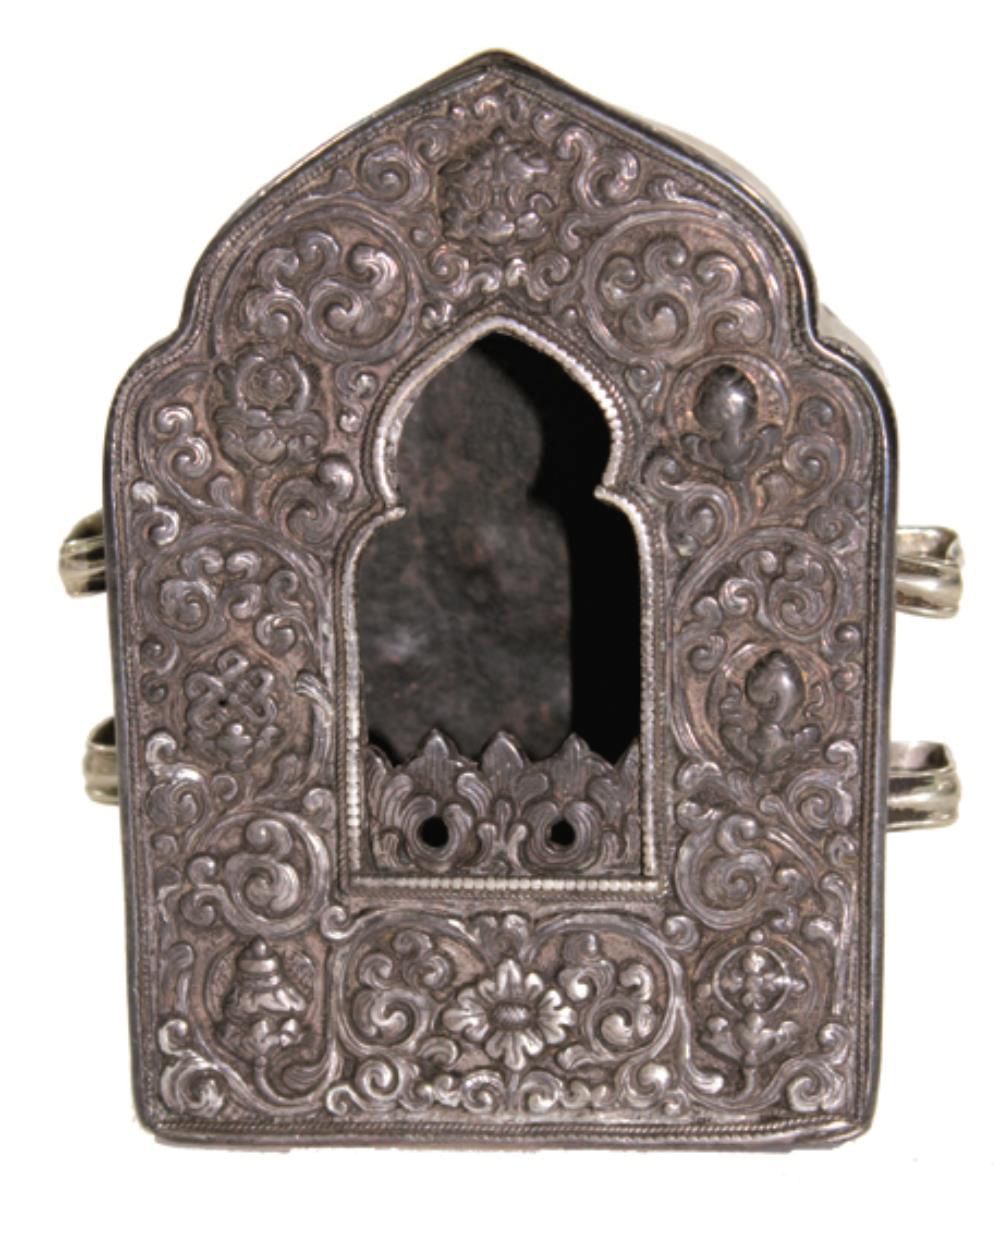 Gau. 正面和侧面都有精细的银加工。铜背板，1900年左右。13 x 5,3 x 9厘米。- 来自德国南部的一个私人收藏。 R